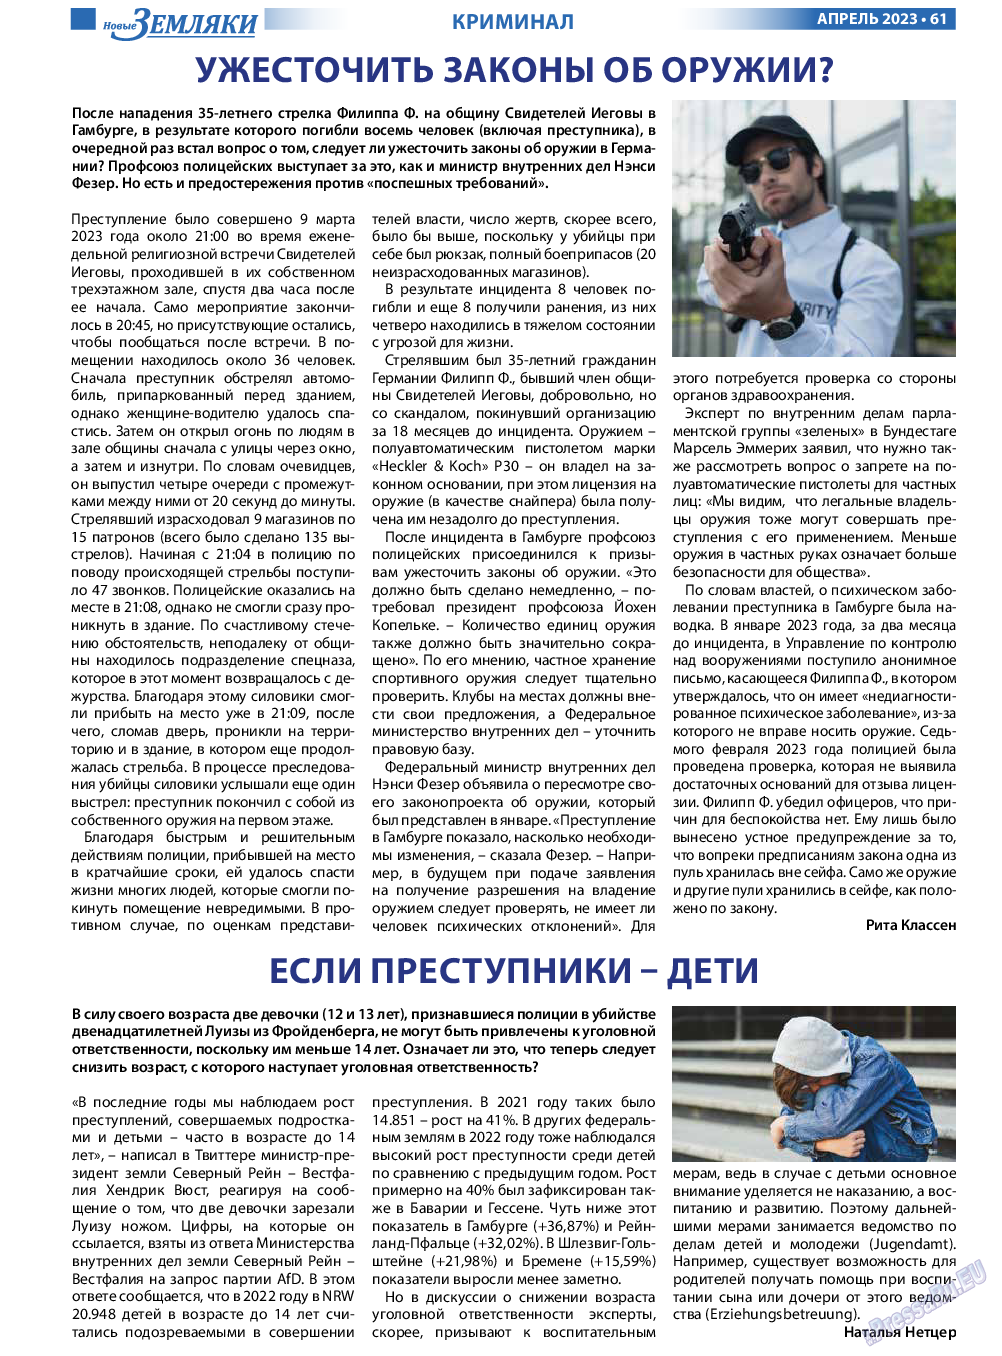 Новые Земляки, газета. 2023 №4 стр.61